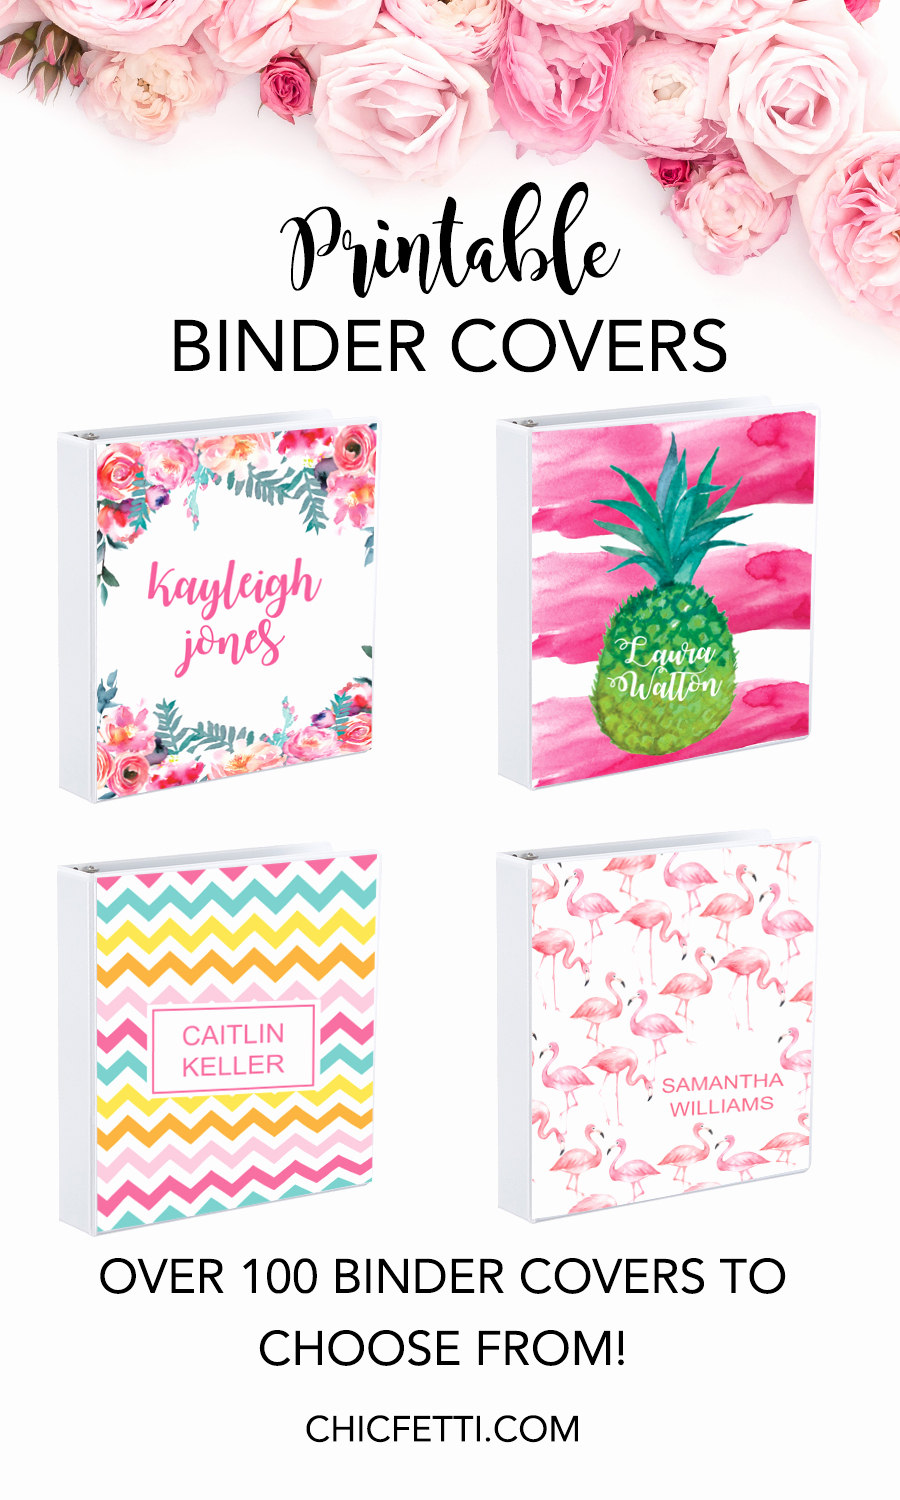 Free Printable Binder Covers Awesome Printable Binder Covers Make Your Own Binder Covers with